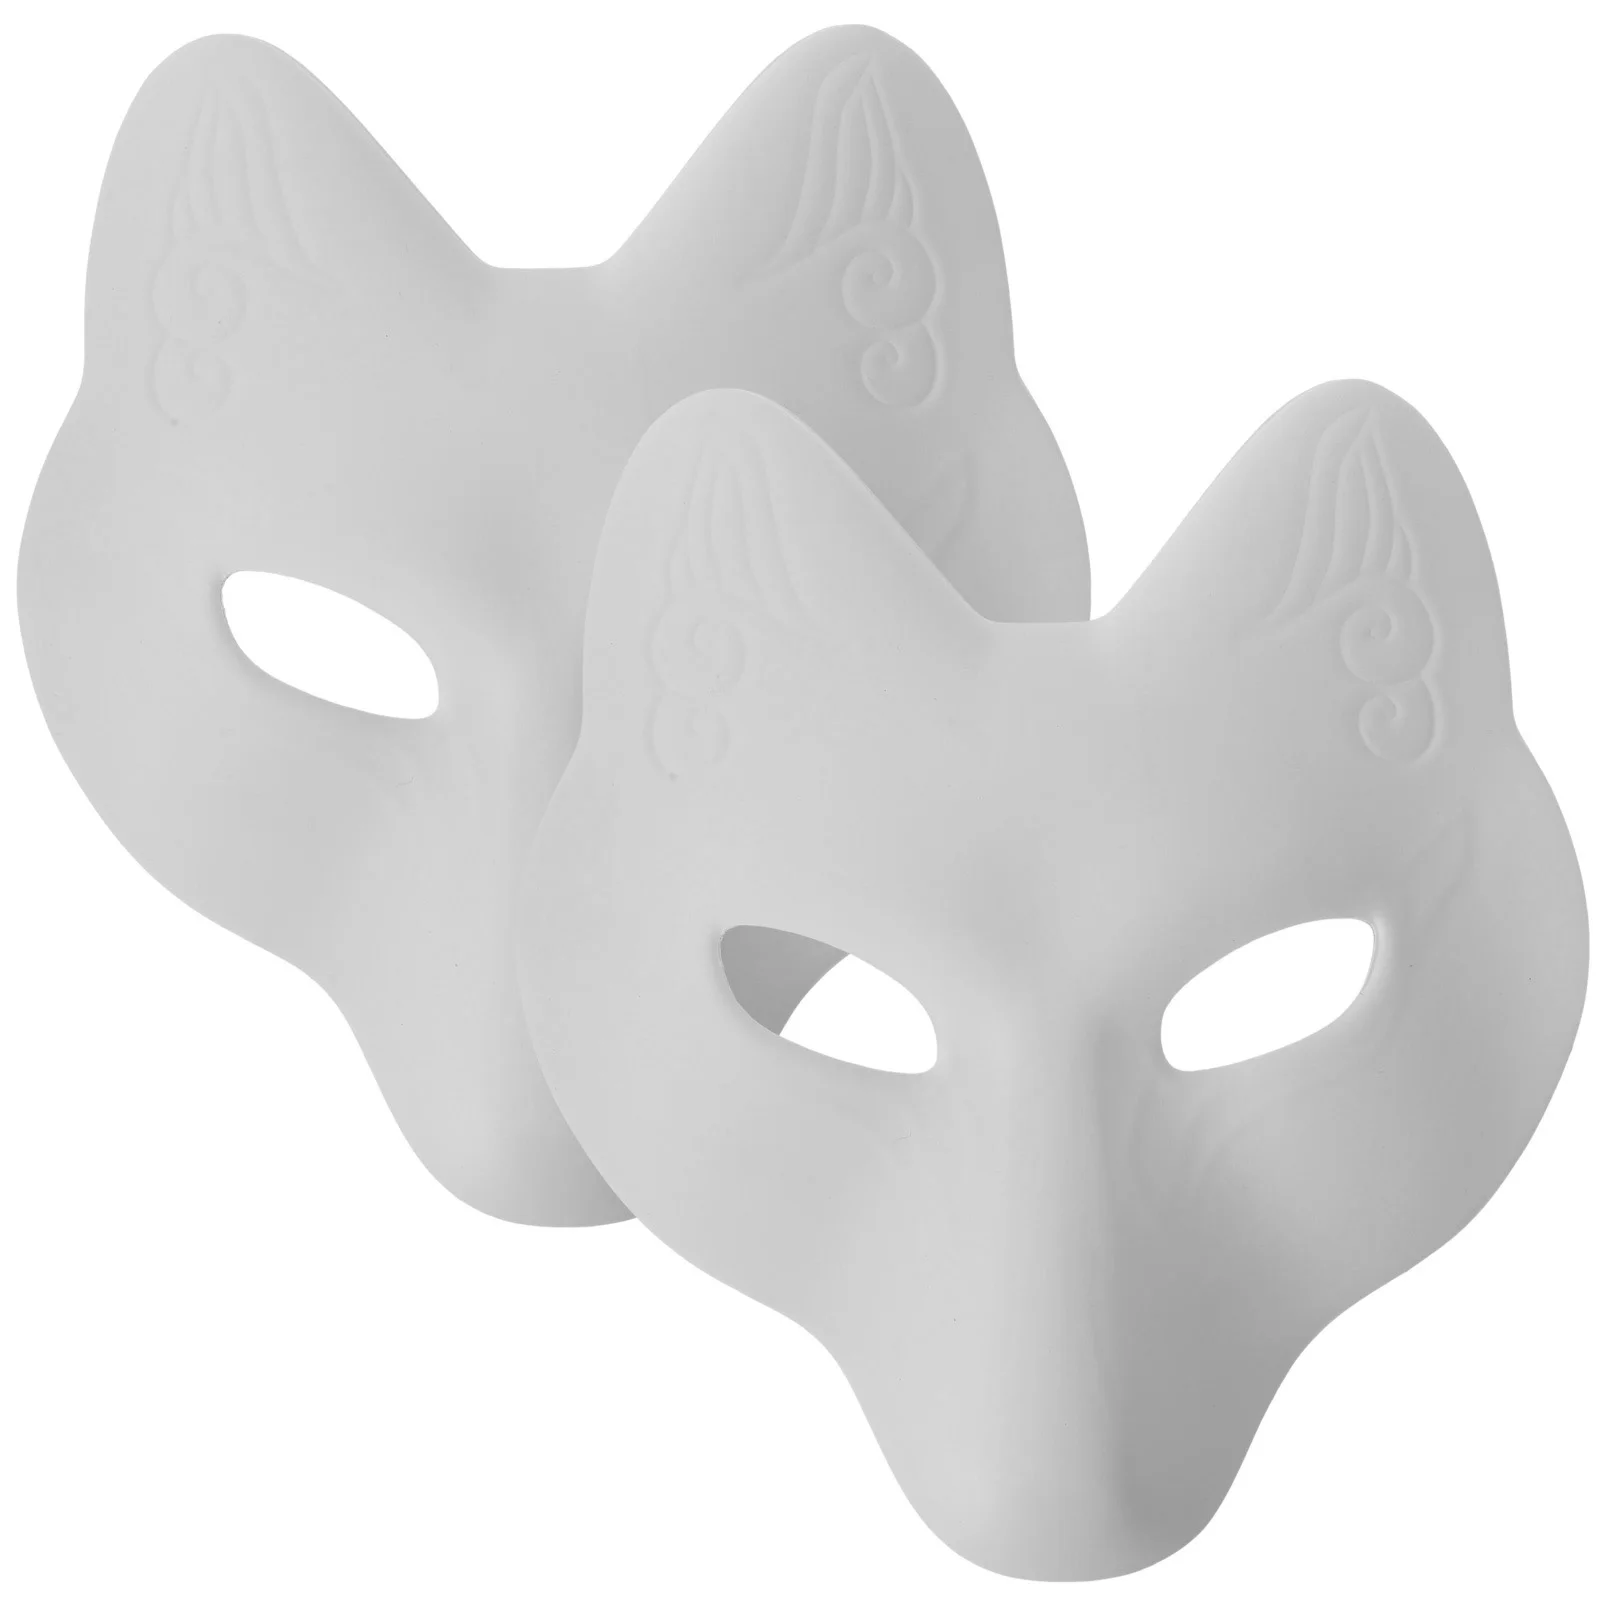 

Маска, маски, лиса, маскарадный костюм на Хэллоуин, косплей, пустая кошка, сделай сам, белые животные, глаза волка, териан, искусственное лицо, половина бумаги, японская